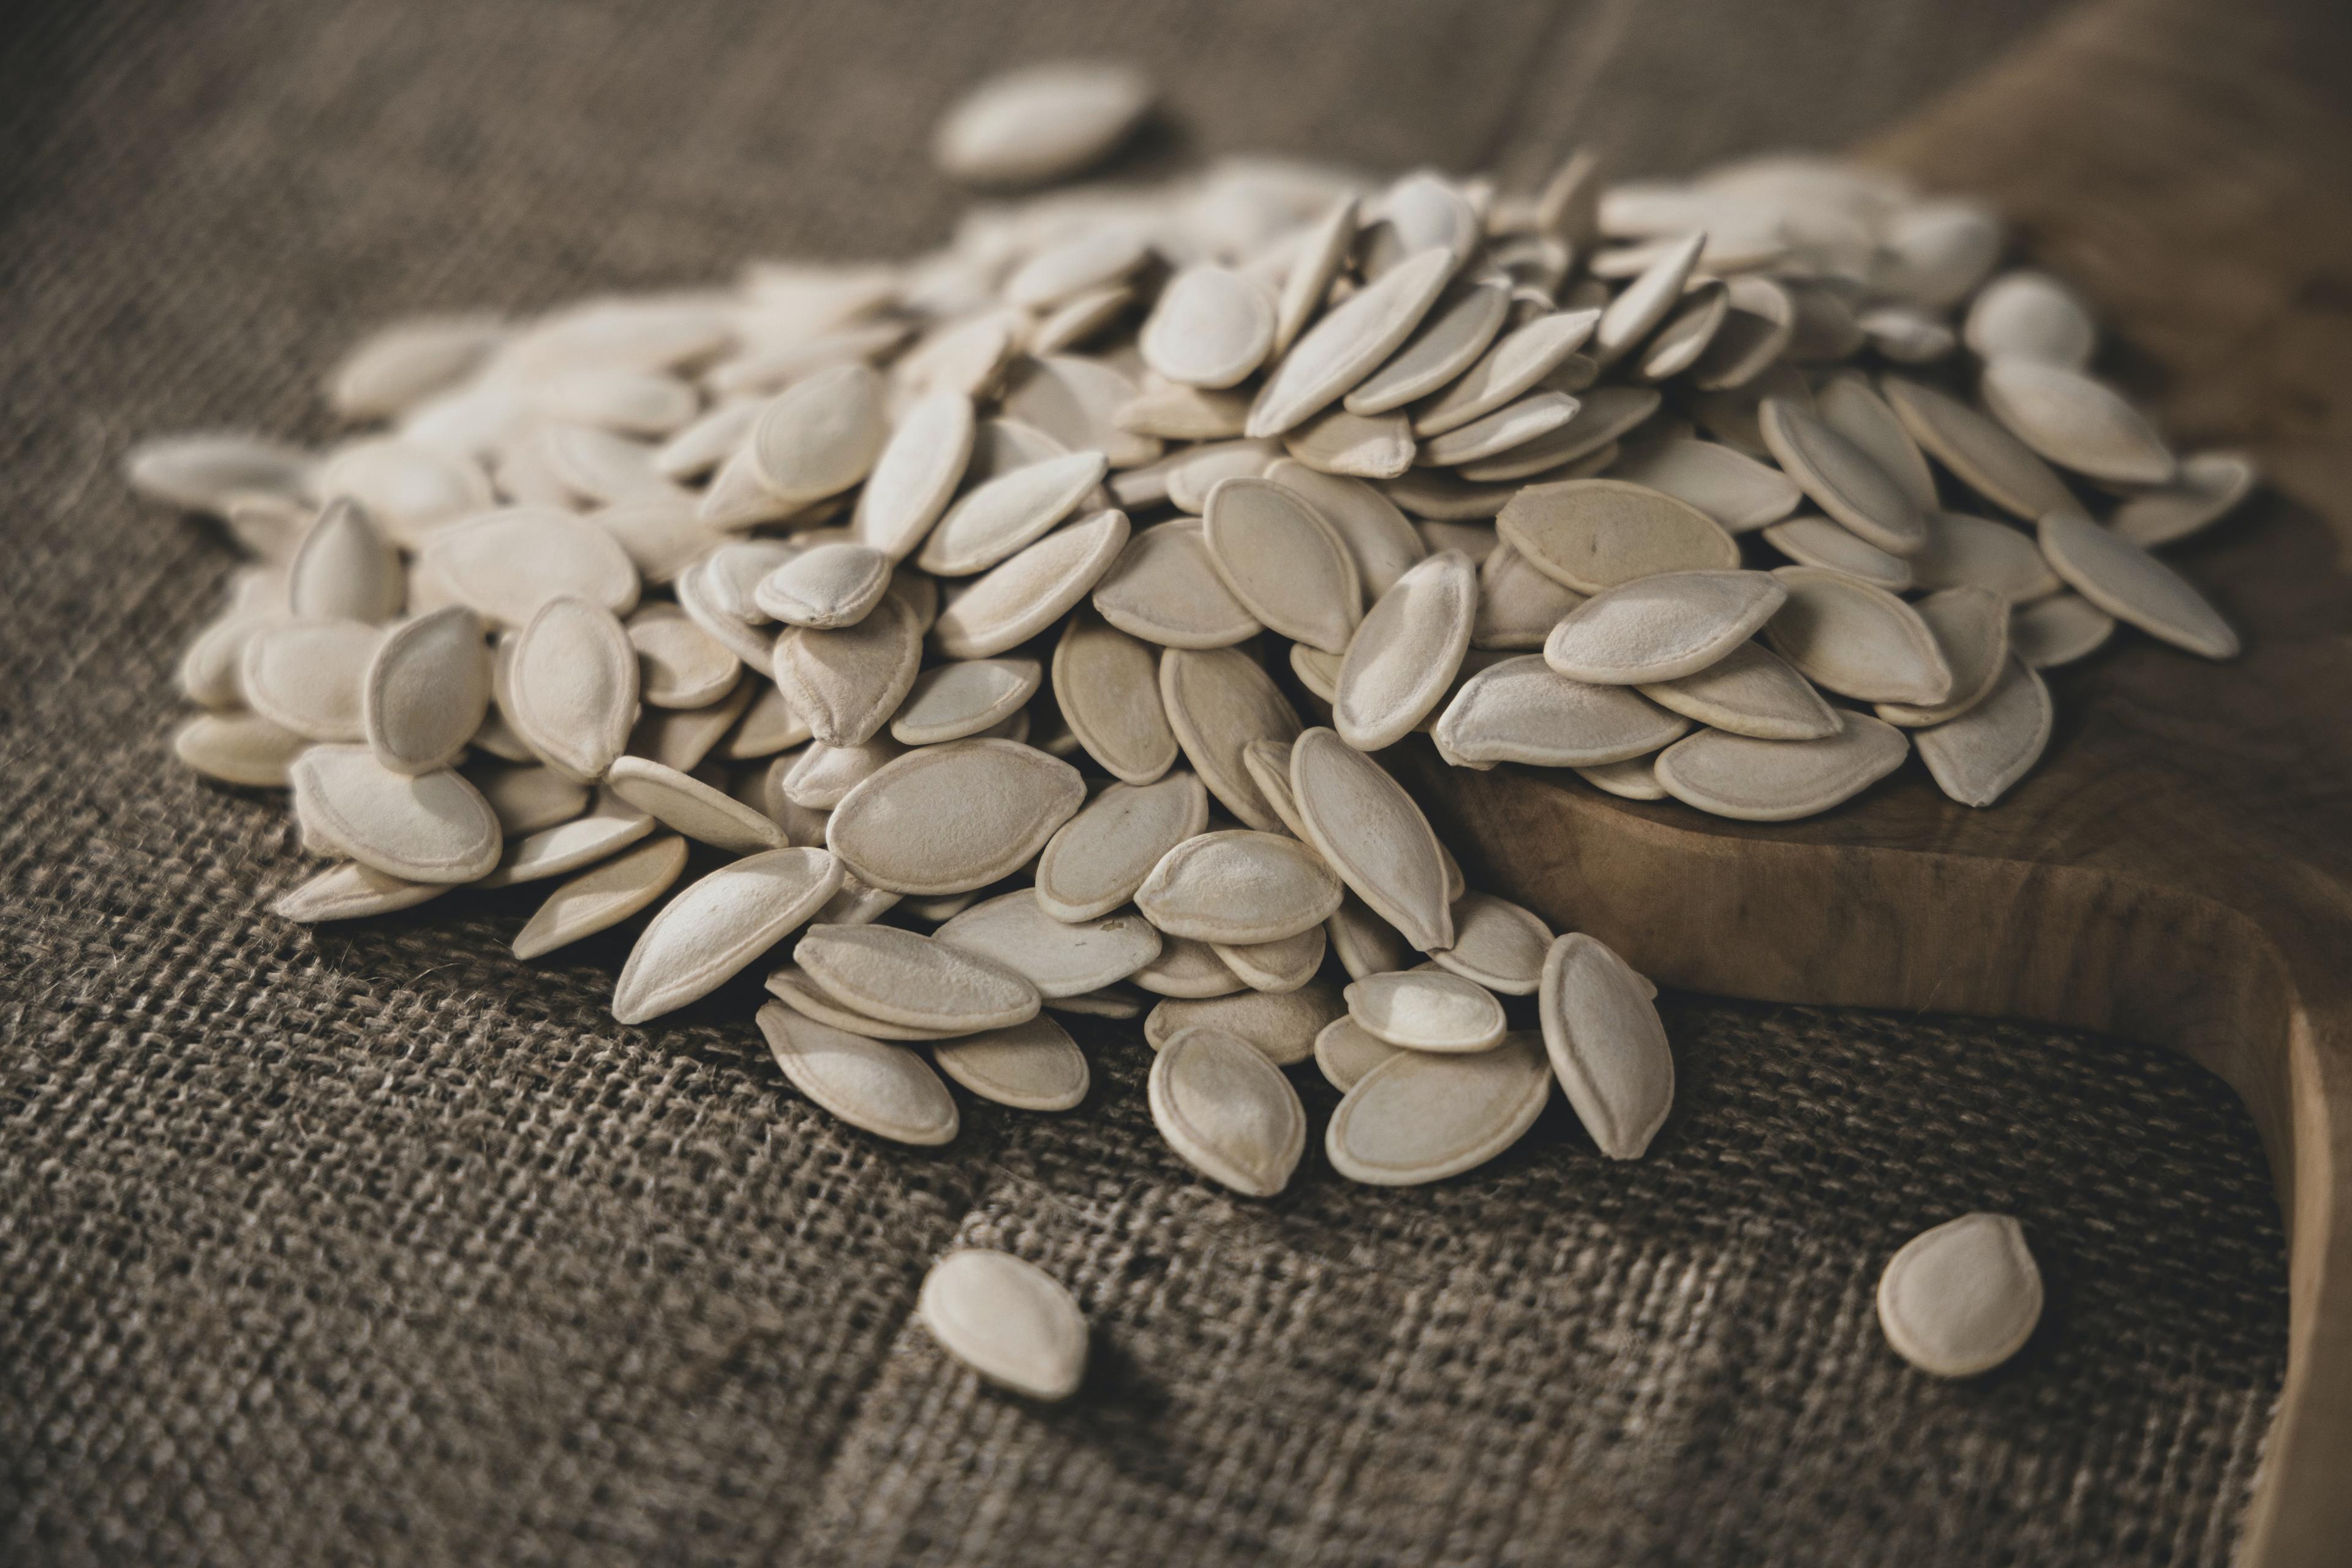 Zdrowotne korzyści związane z spożywaniem nasion dyni - bogatych w cynk i magnez. Superfoods: właściwości zdrowotne i kulinarne z pestkami dyni. Jakie właściwości odżywcze mają pestki dyni? 